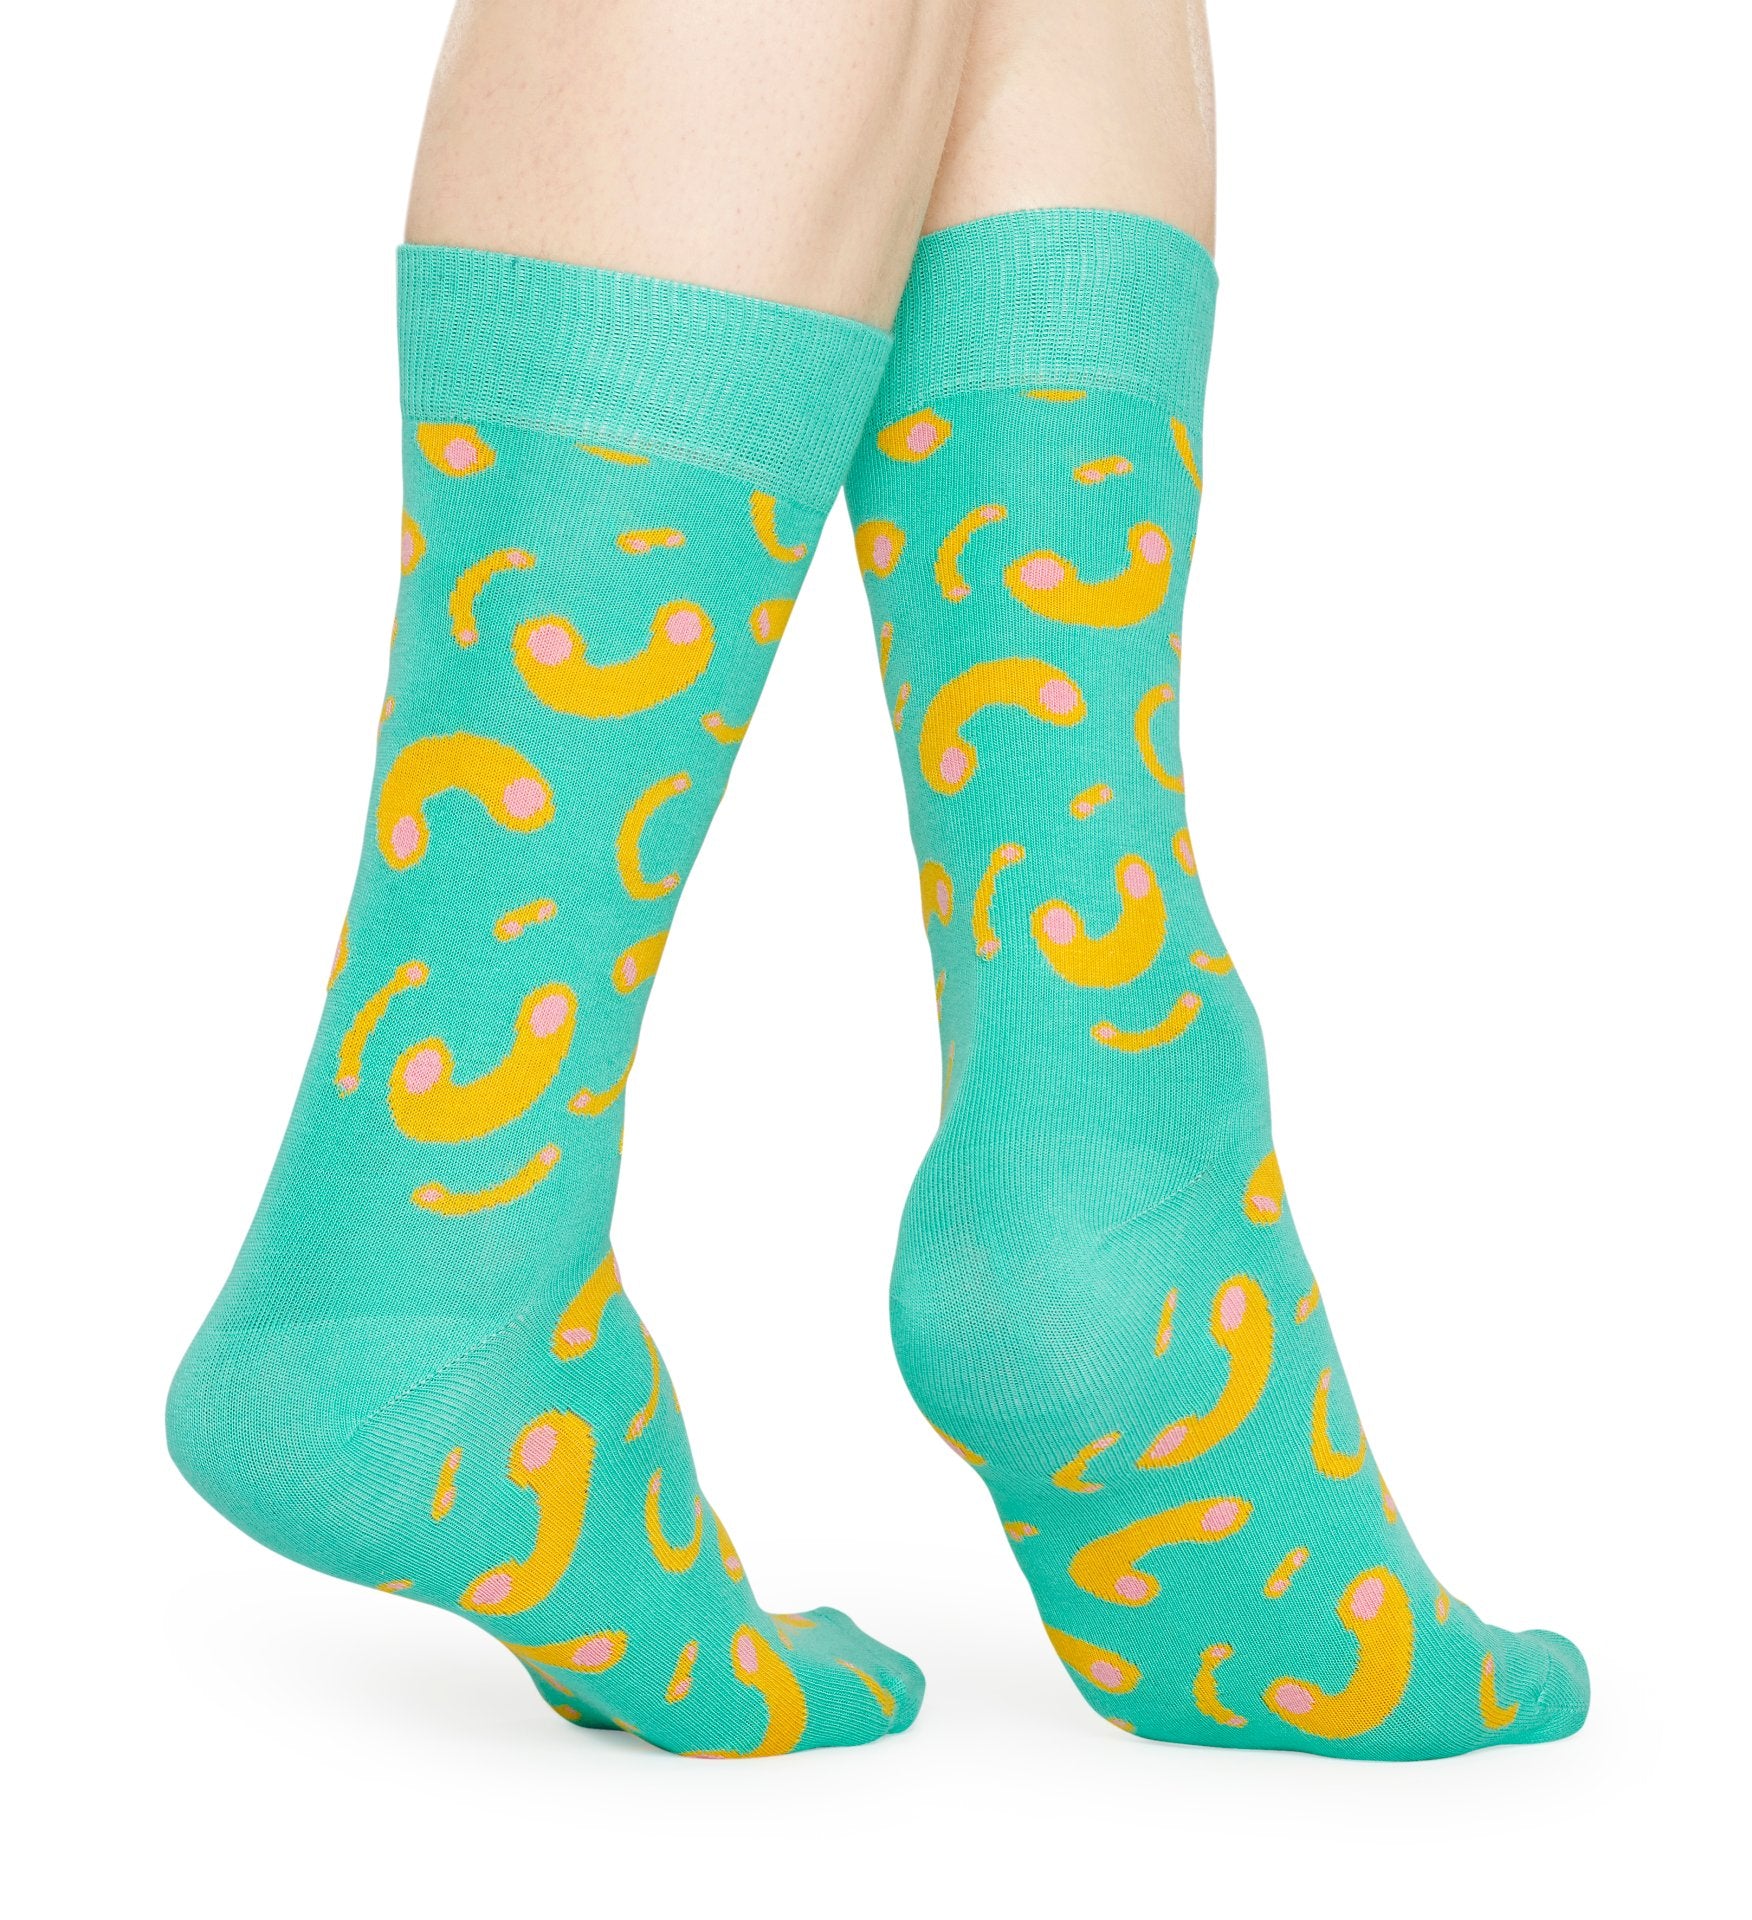 Tyrkysové ponožky Happy Socks s makarony, vzor Macaroni